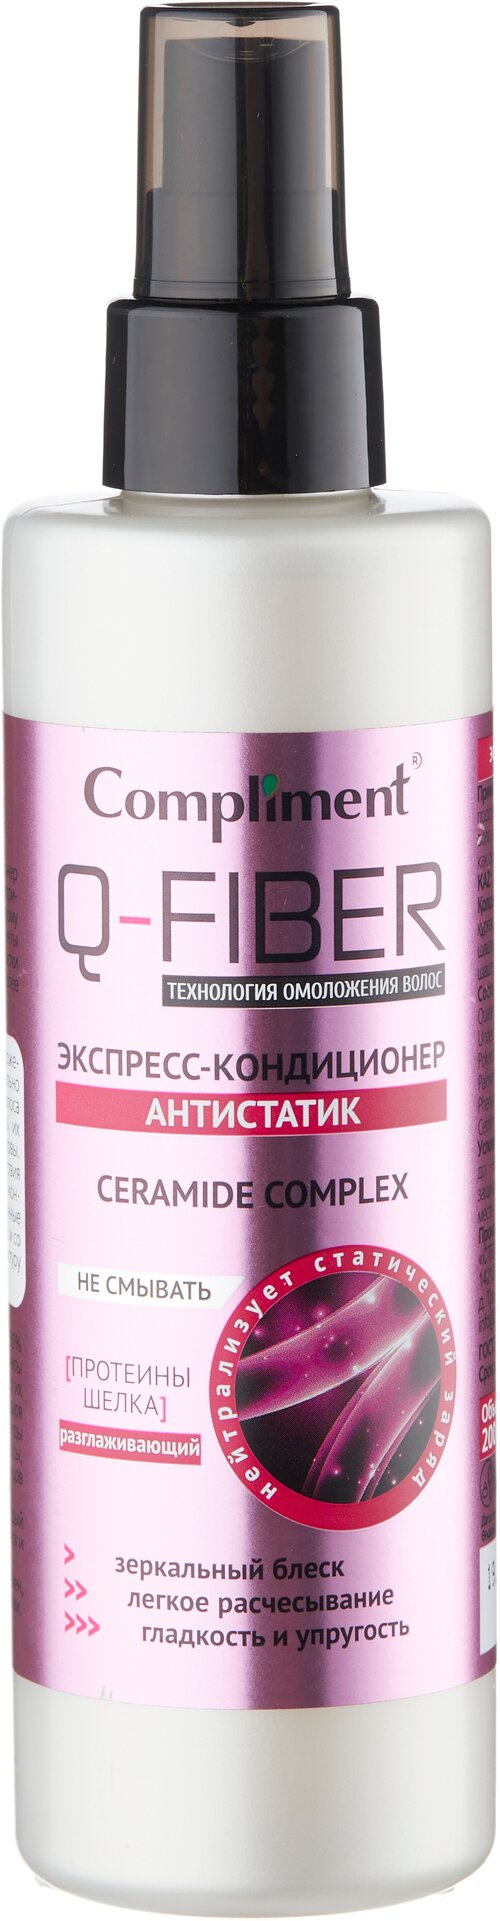 Compliment несмываемый экспресс-кондиционер для волос Q-Fiber Антистатик Ceramide Complex, 200 мл